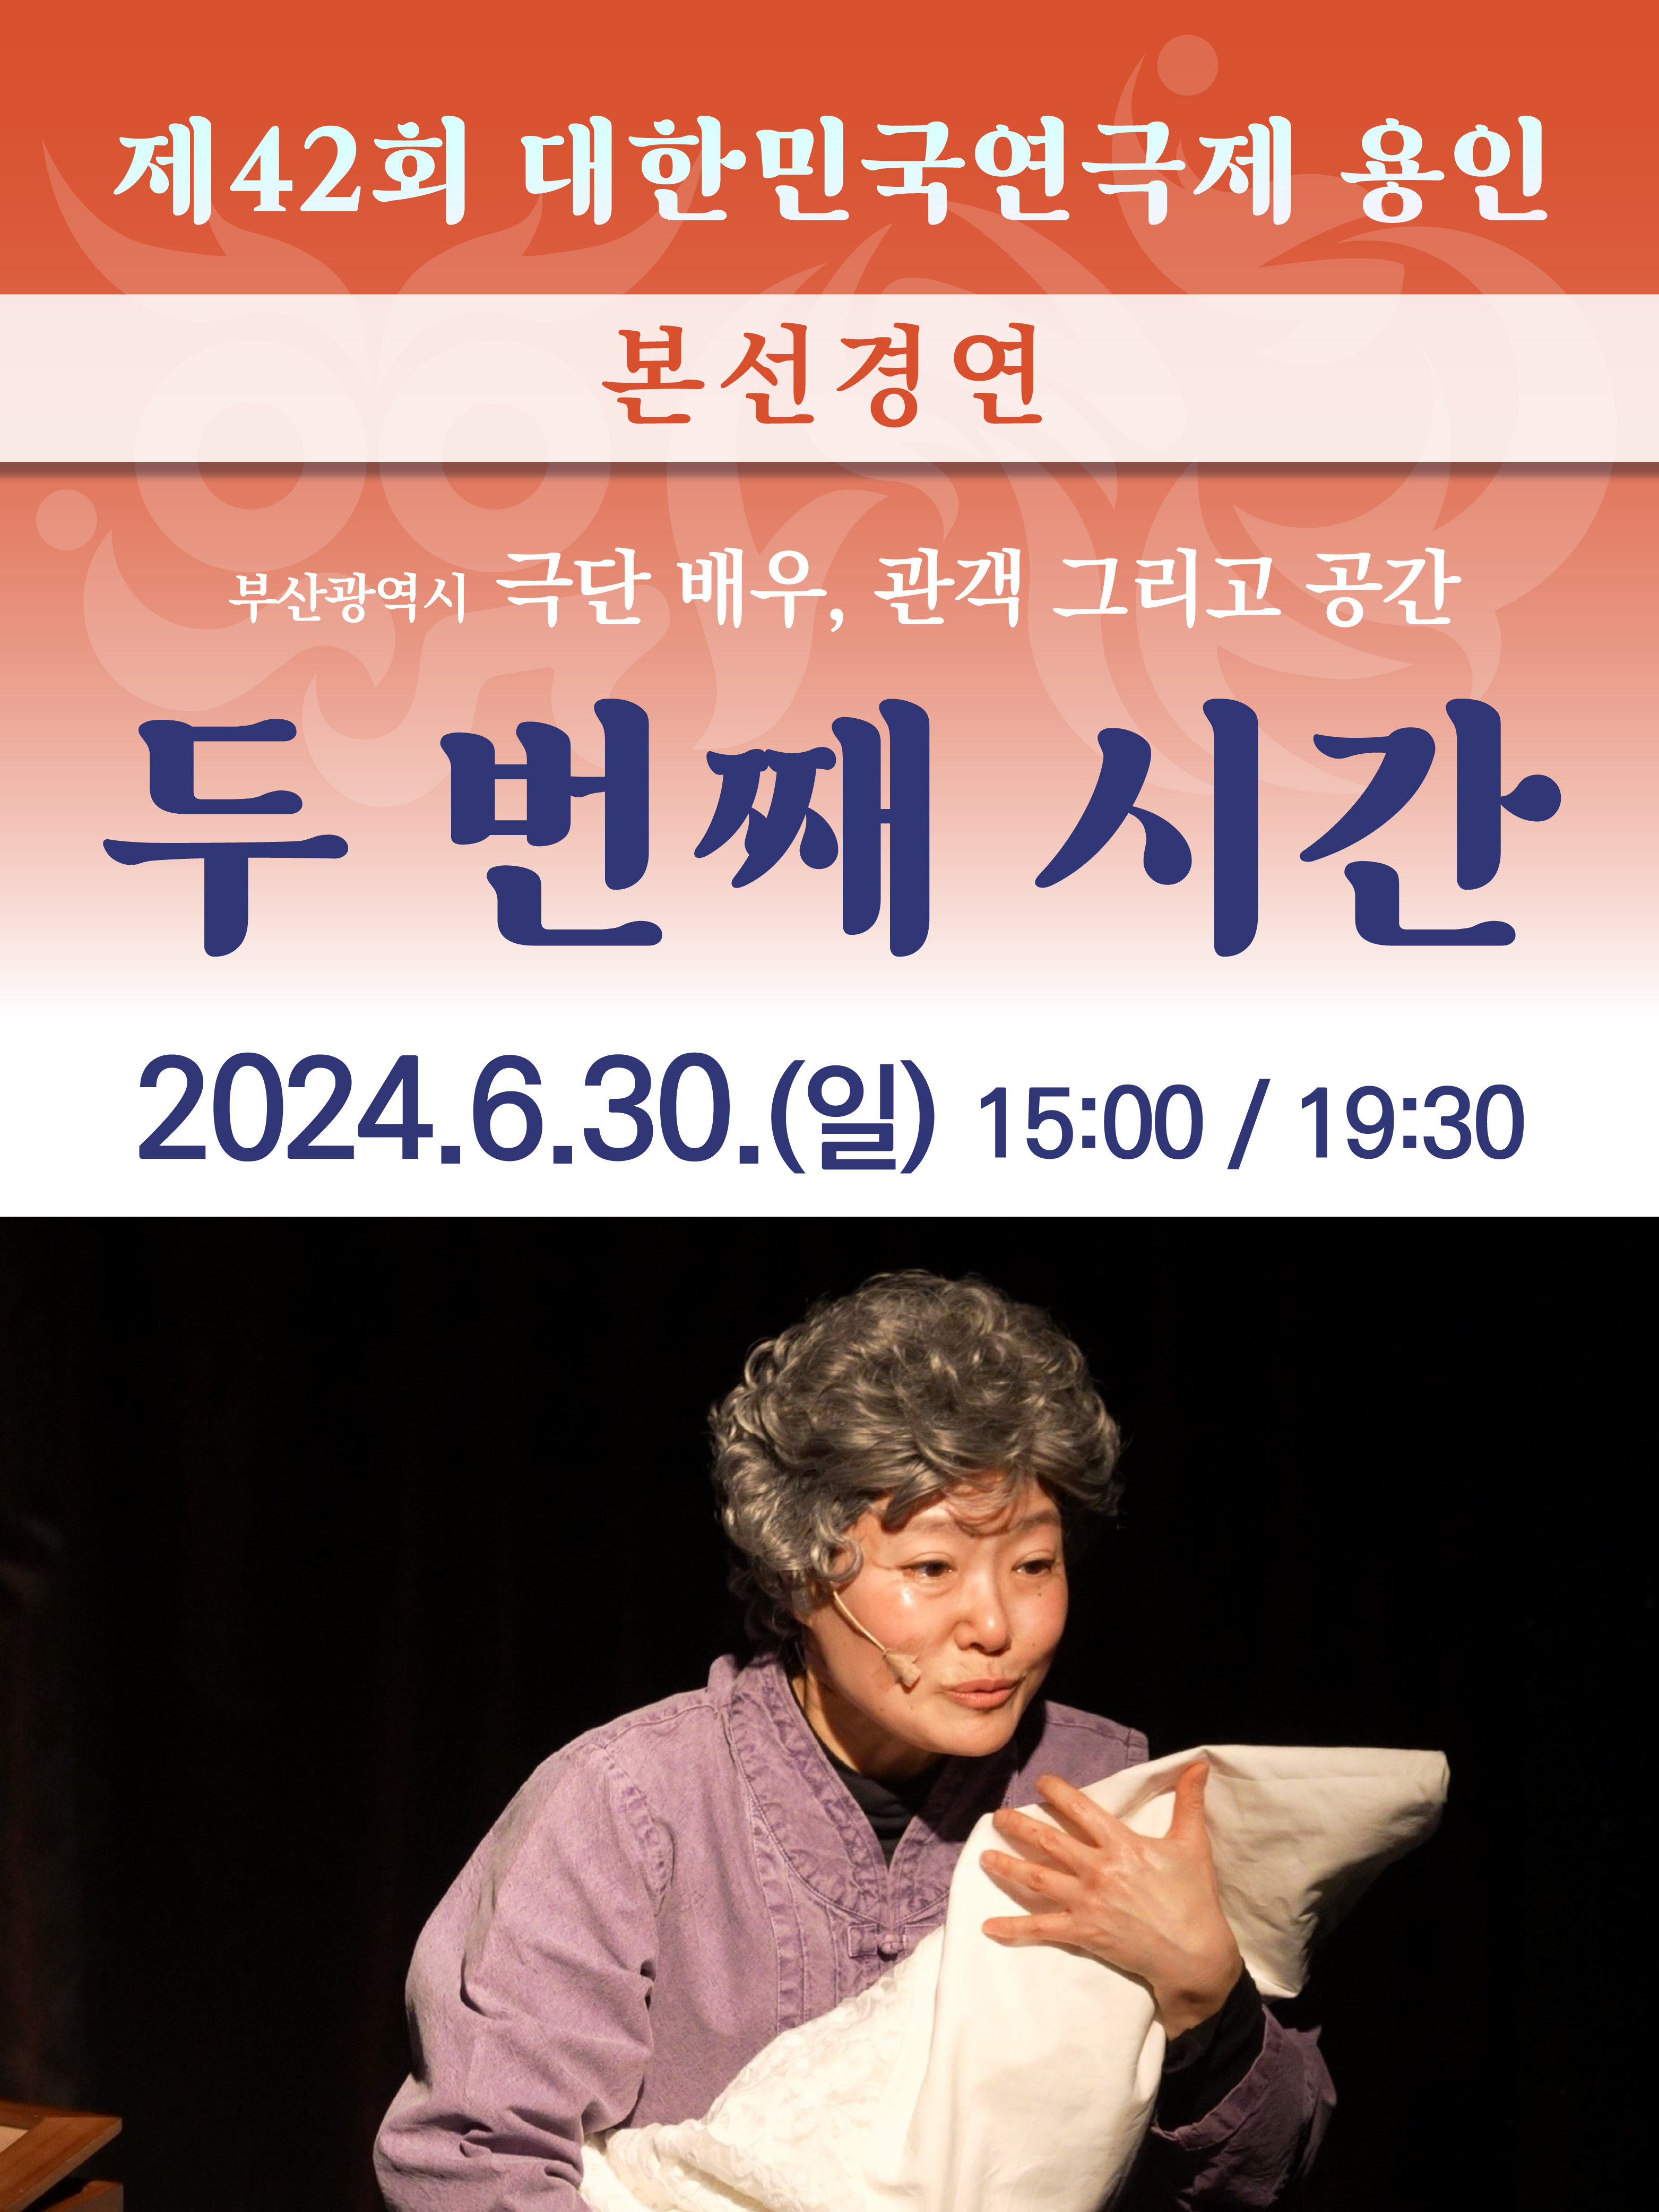 제42회 대한민국연극제 용인 〈두 번째 시간〉 (부산) 홍보포스터